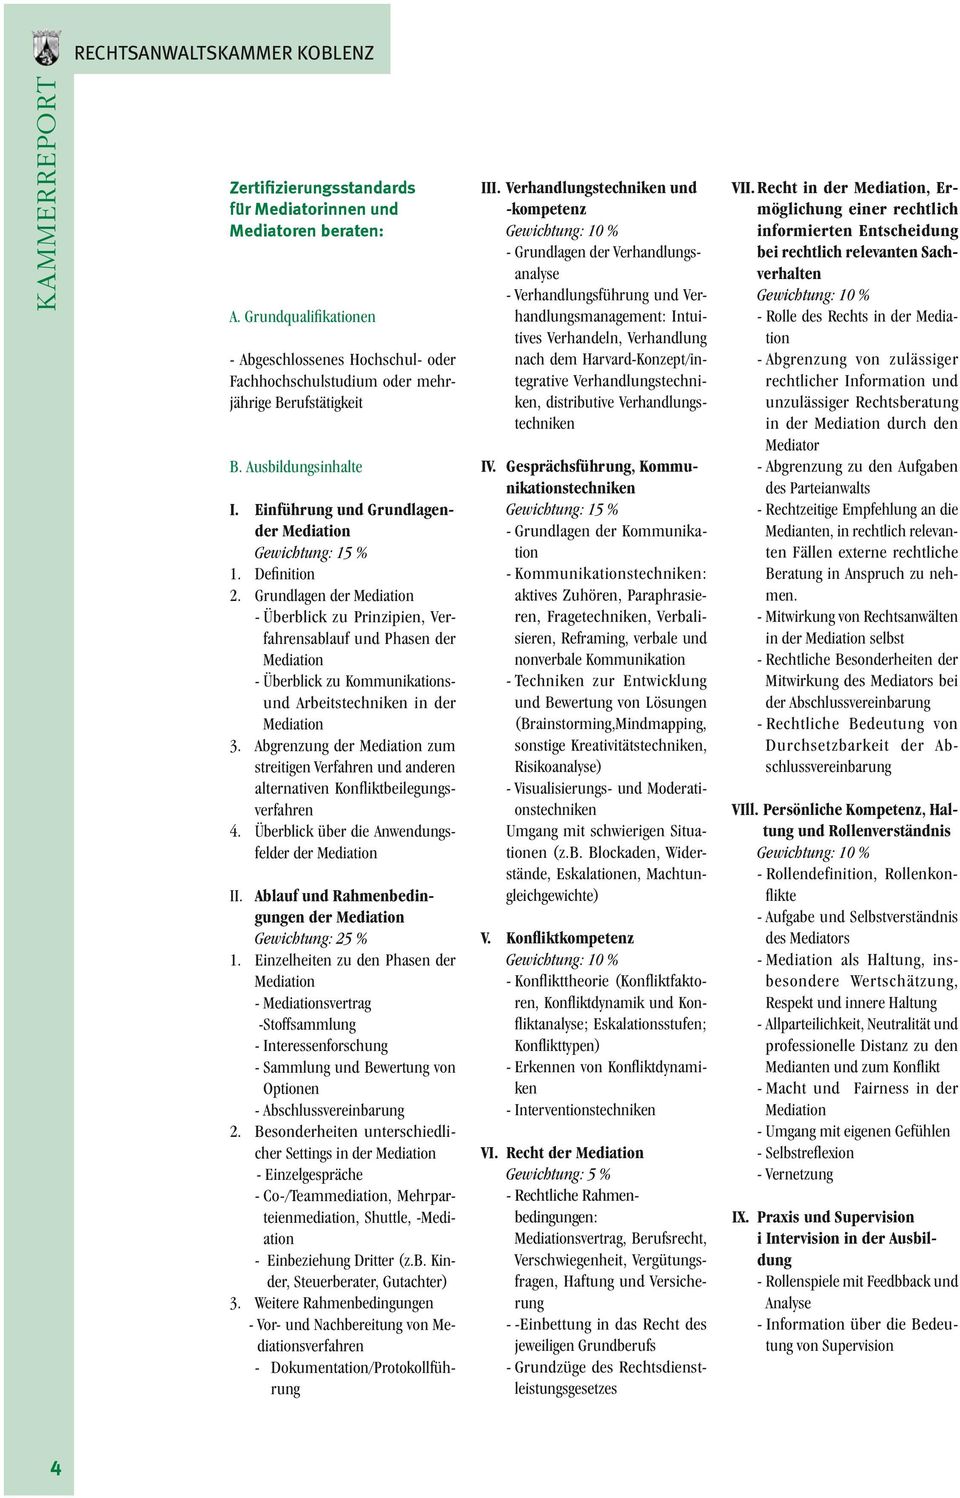 Definition 2. Grundlagen der Mediation - Überblick zu Prinzipien, Verfahrensablauf und Phasen der Mediation - Überblick zu Kommunikationsund Arbeitstechniken in der Mediation 3.